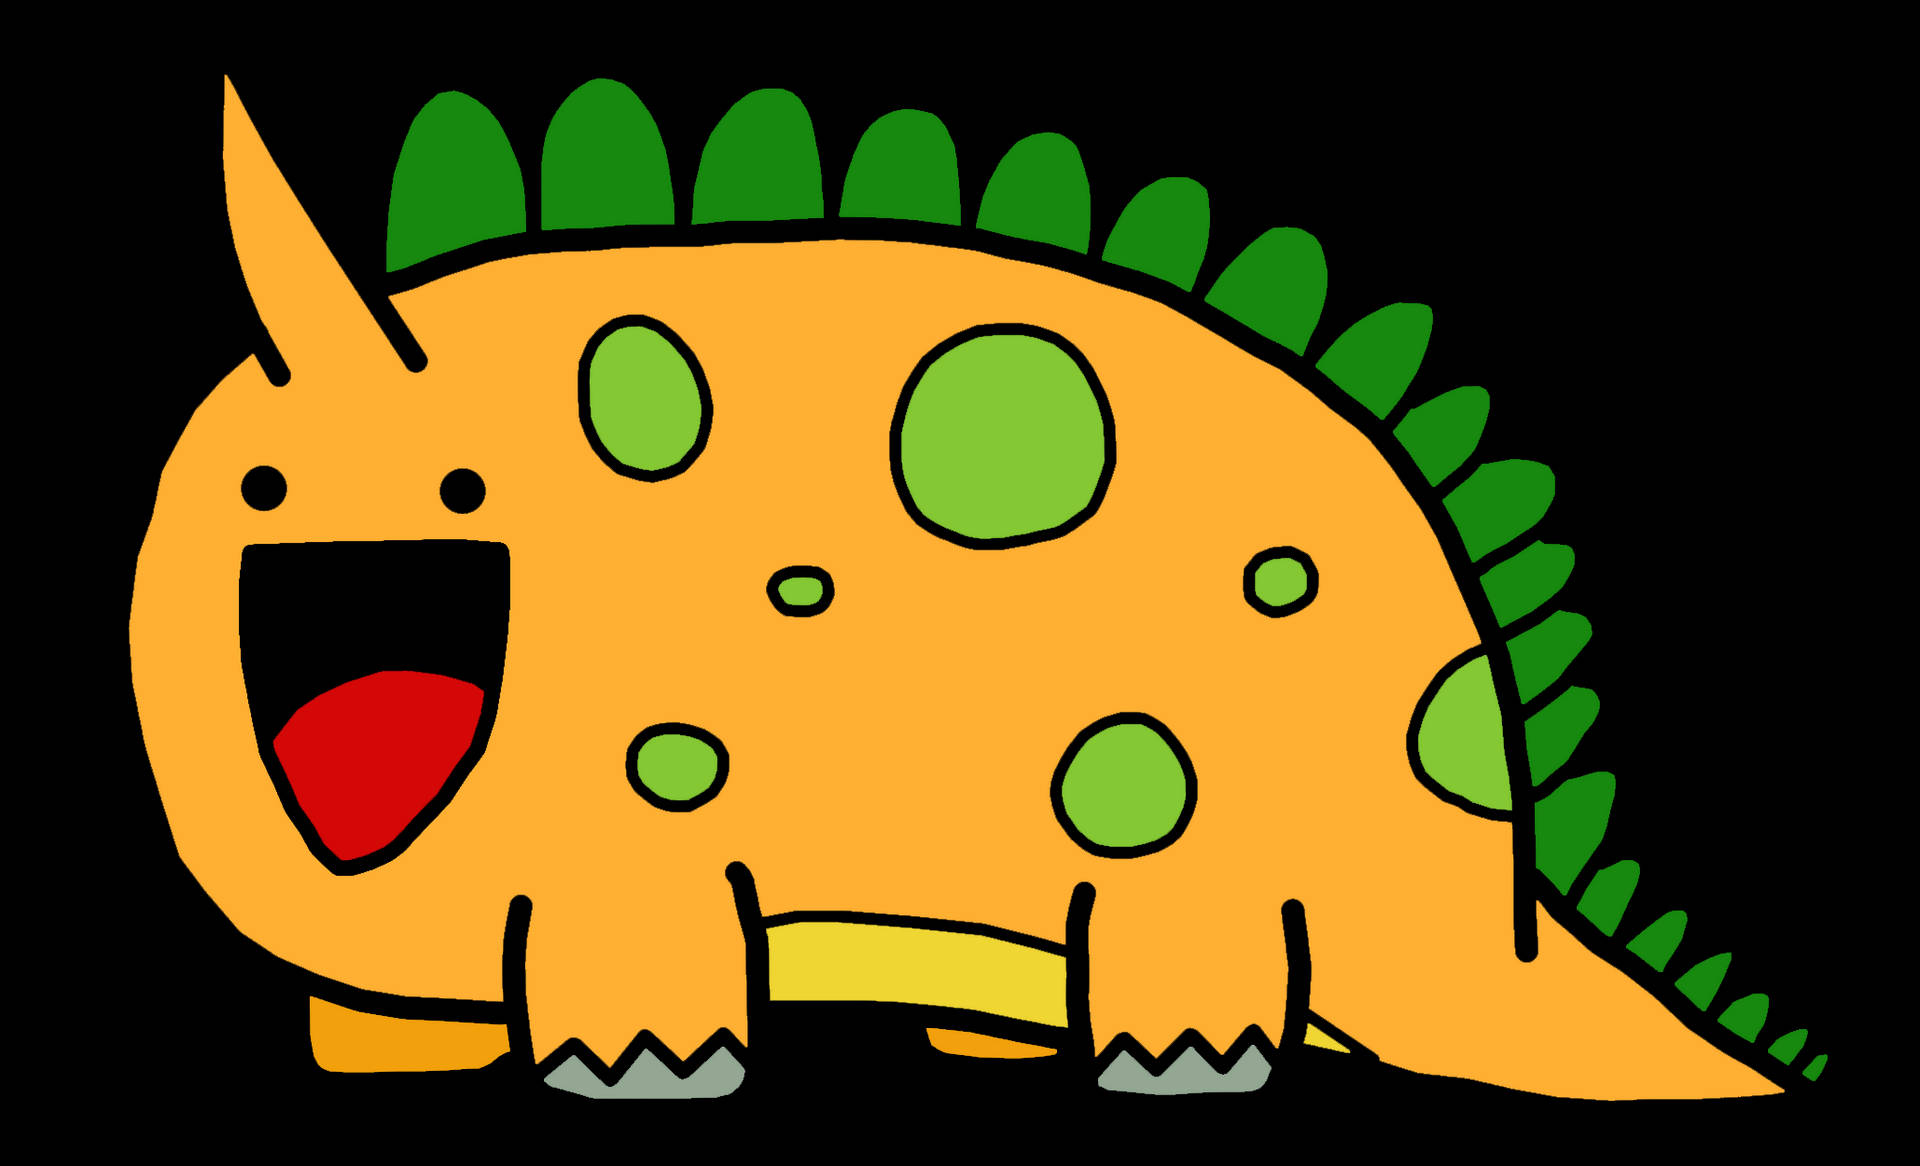 A Cartoon Dinosaur With Green Eyes And Green Tongue Wallpaper